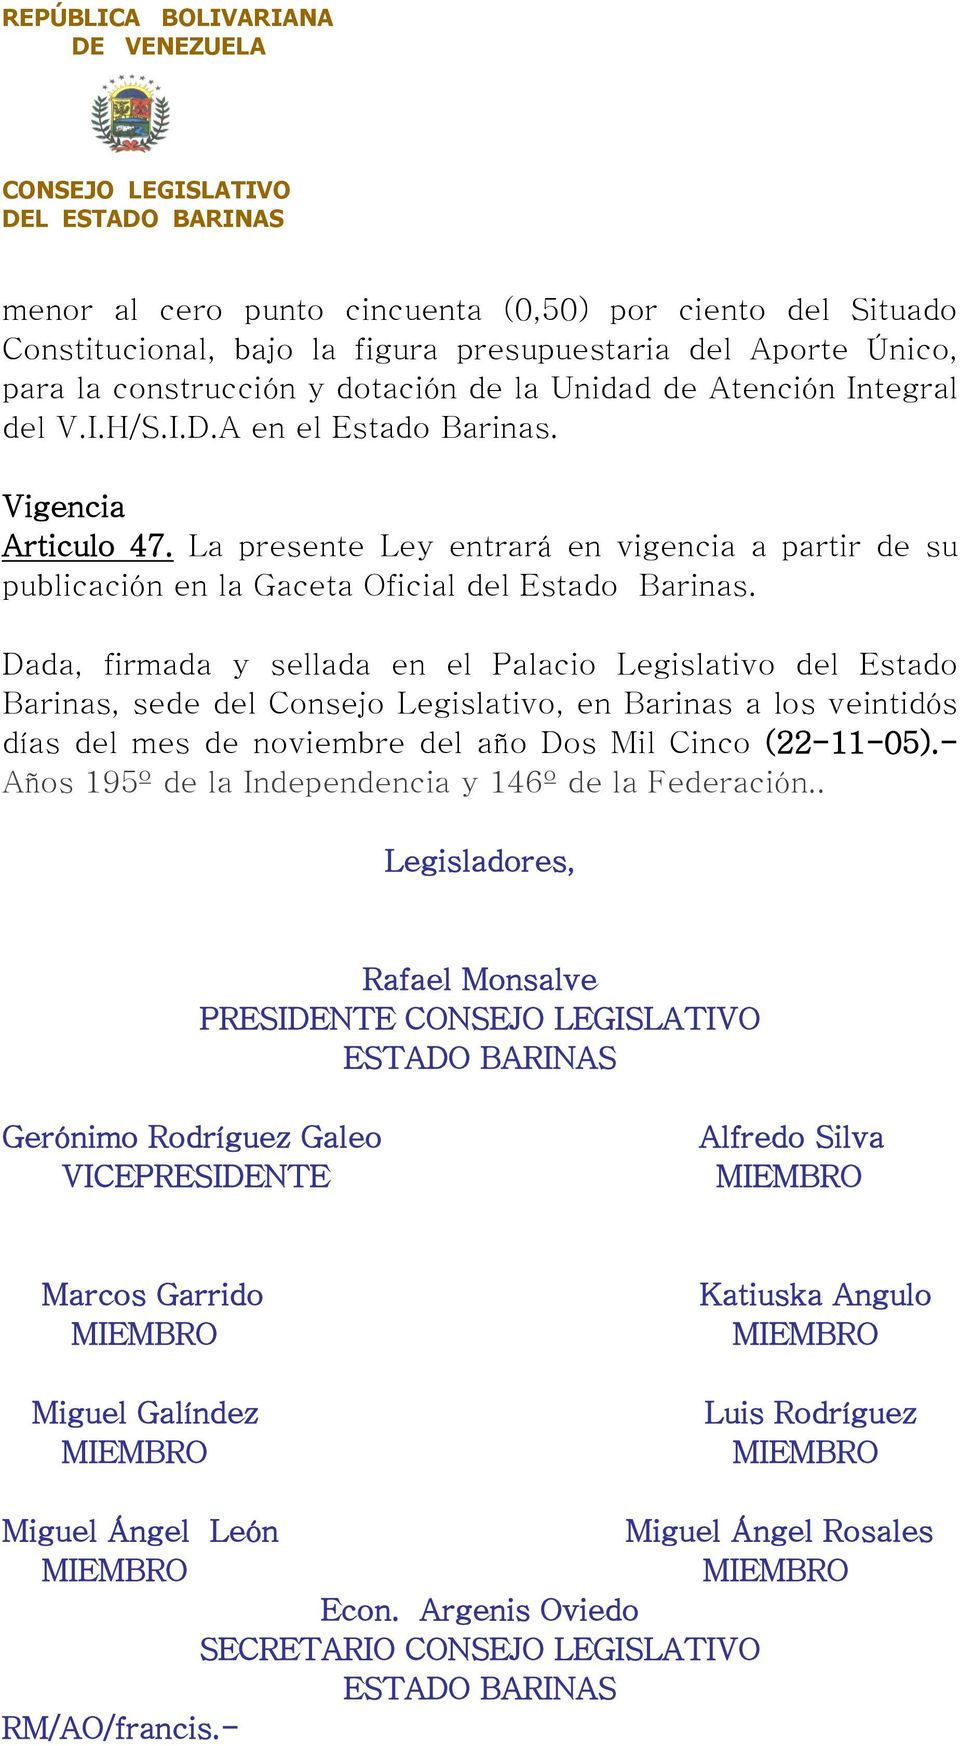 Dada, firmada y sellada en el Palacio Legislativo del Estado Barinas, sede del Consejo Legislativo, en Barinas a los veintidós días del mes de noviembre del año Dos Mil Cinco (22-11-05).